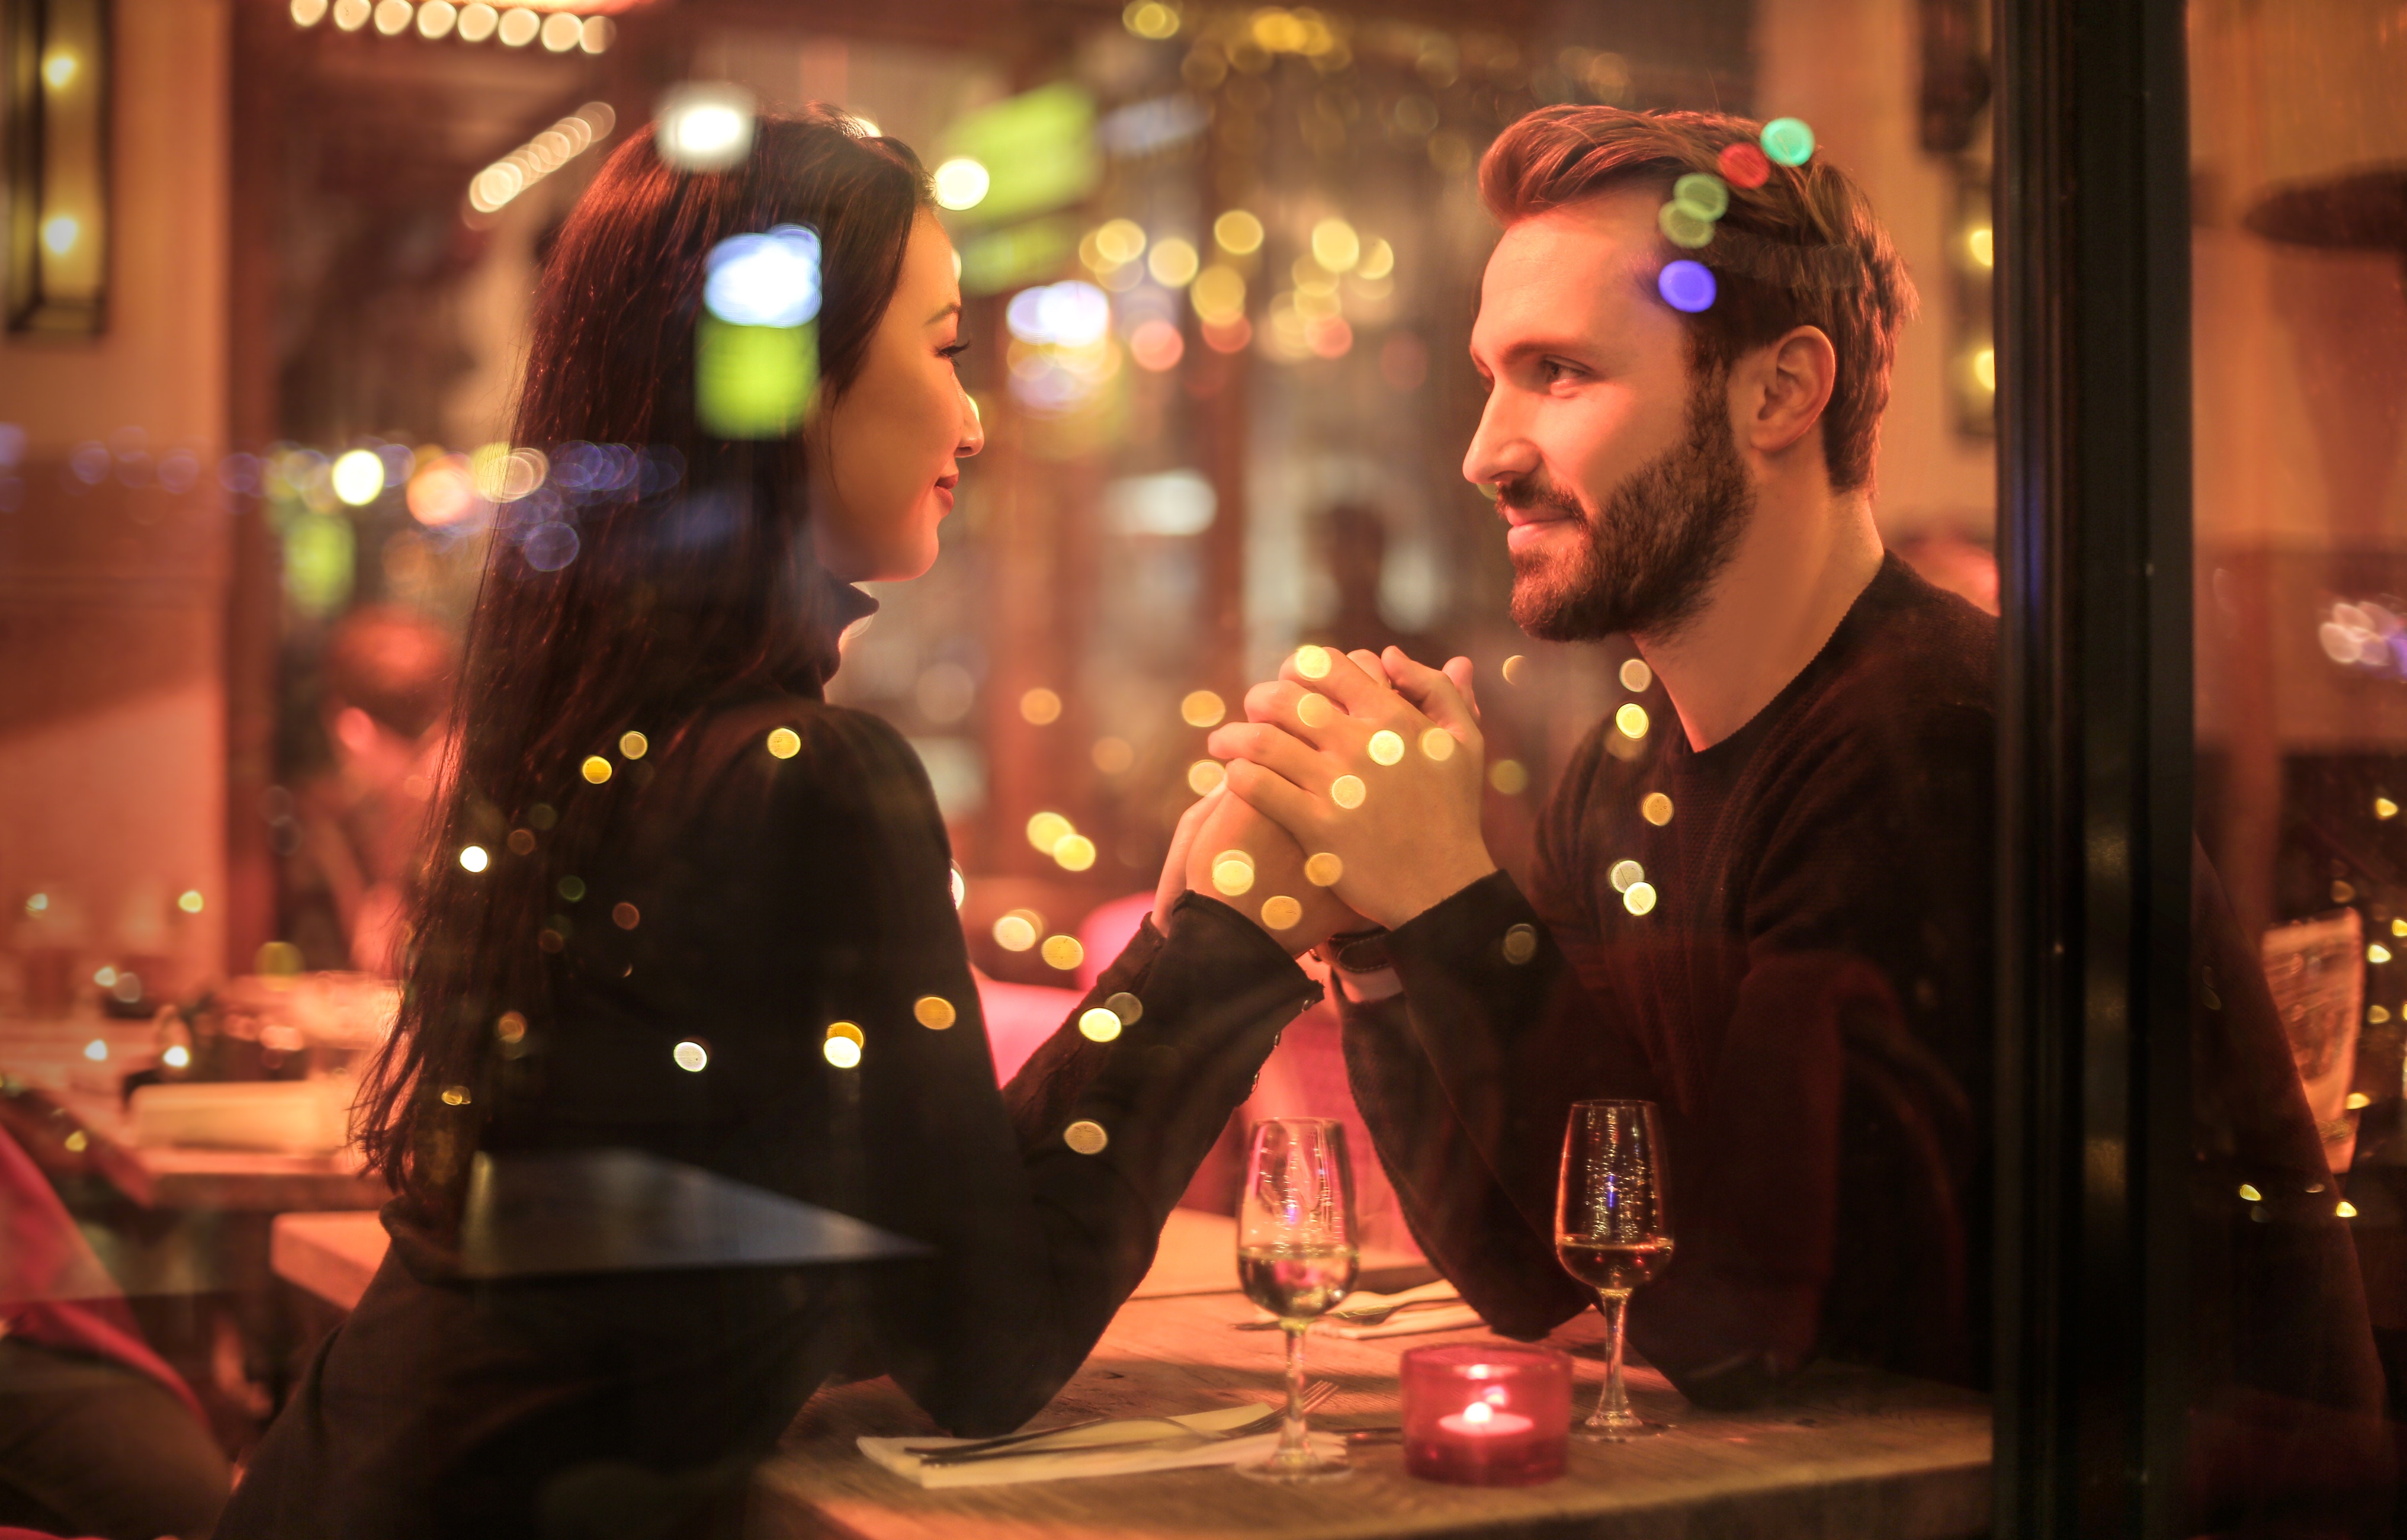 affiliate marketing dating better single than taken for granted artinya